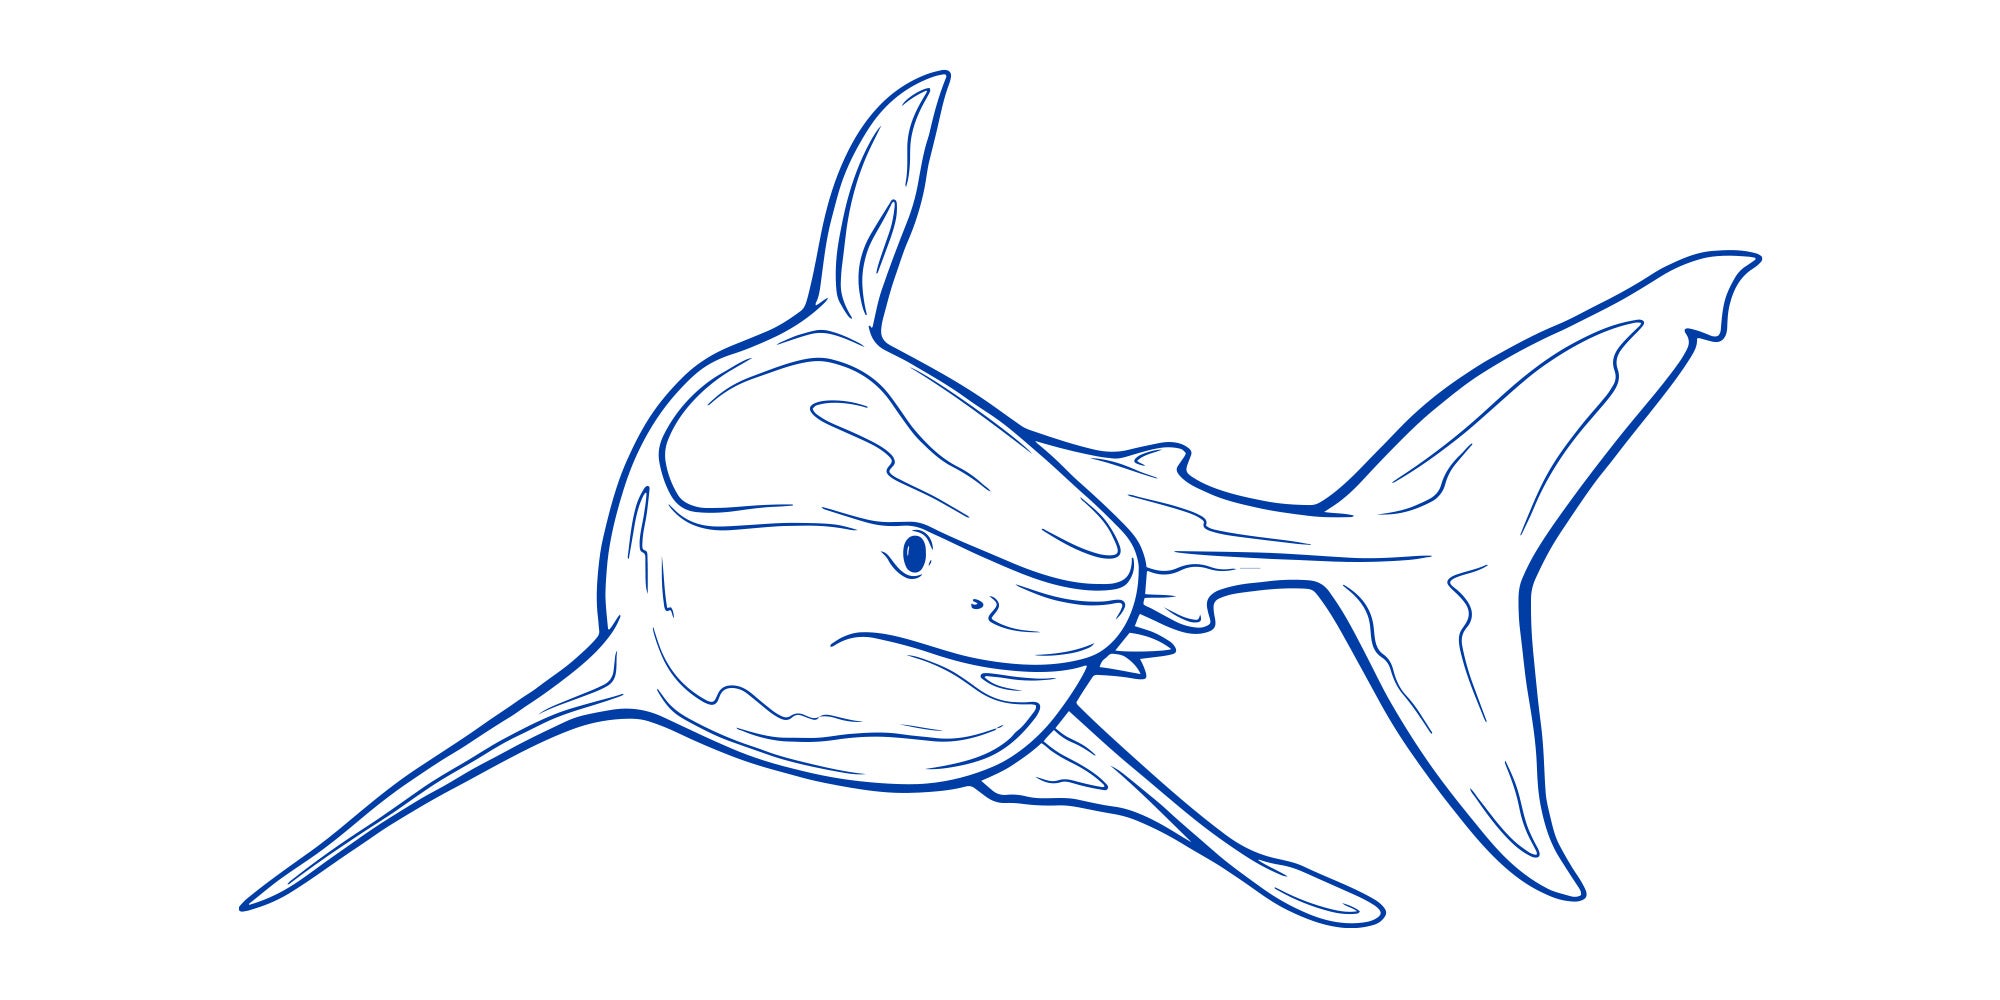 Great white shark illustration